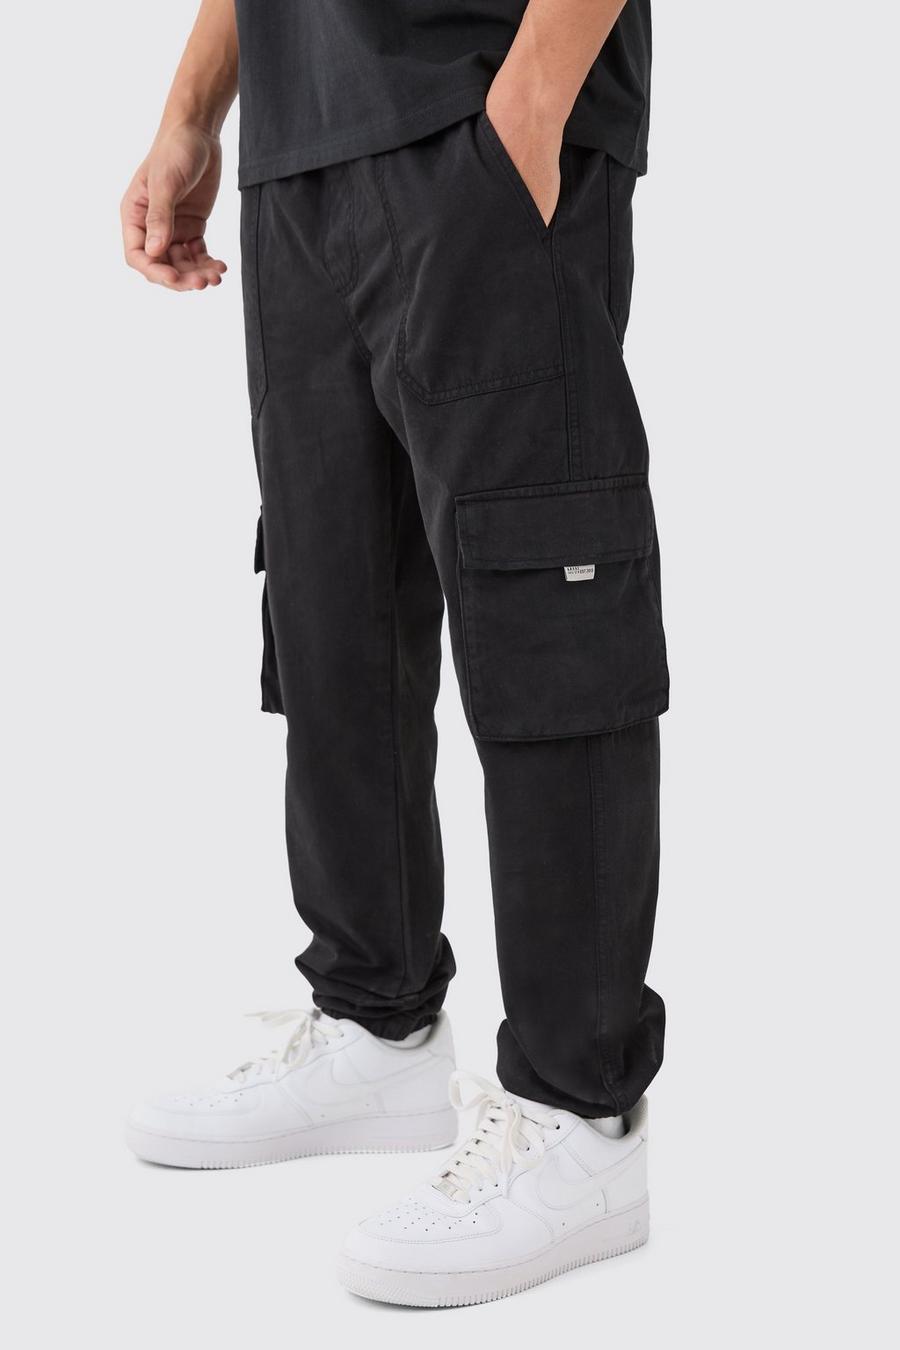 Pantalón deportivo cargo ajustado con cintura elástica, Black